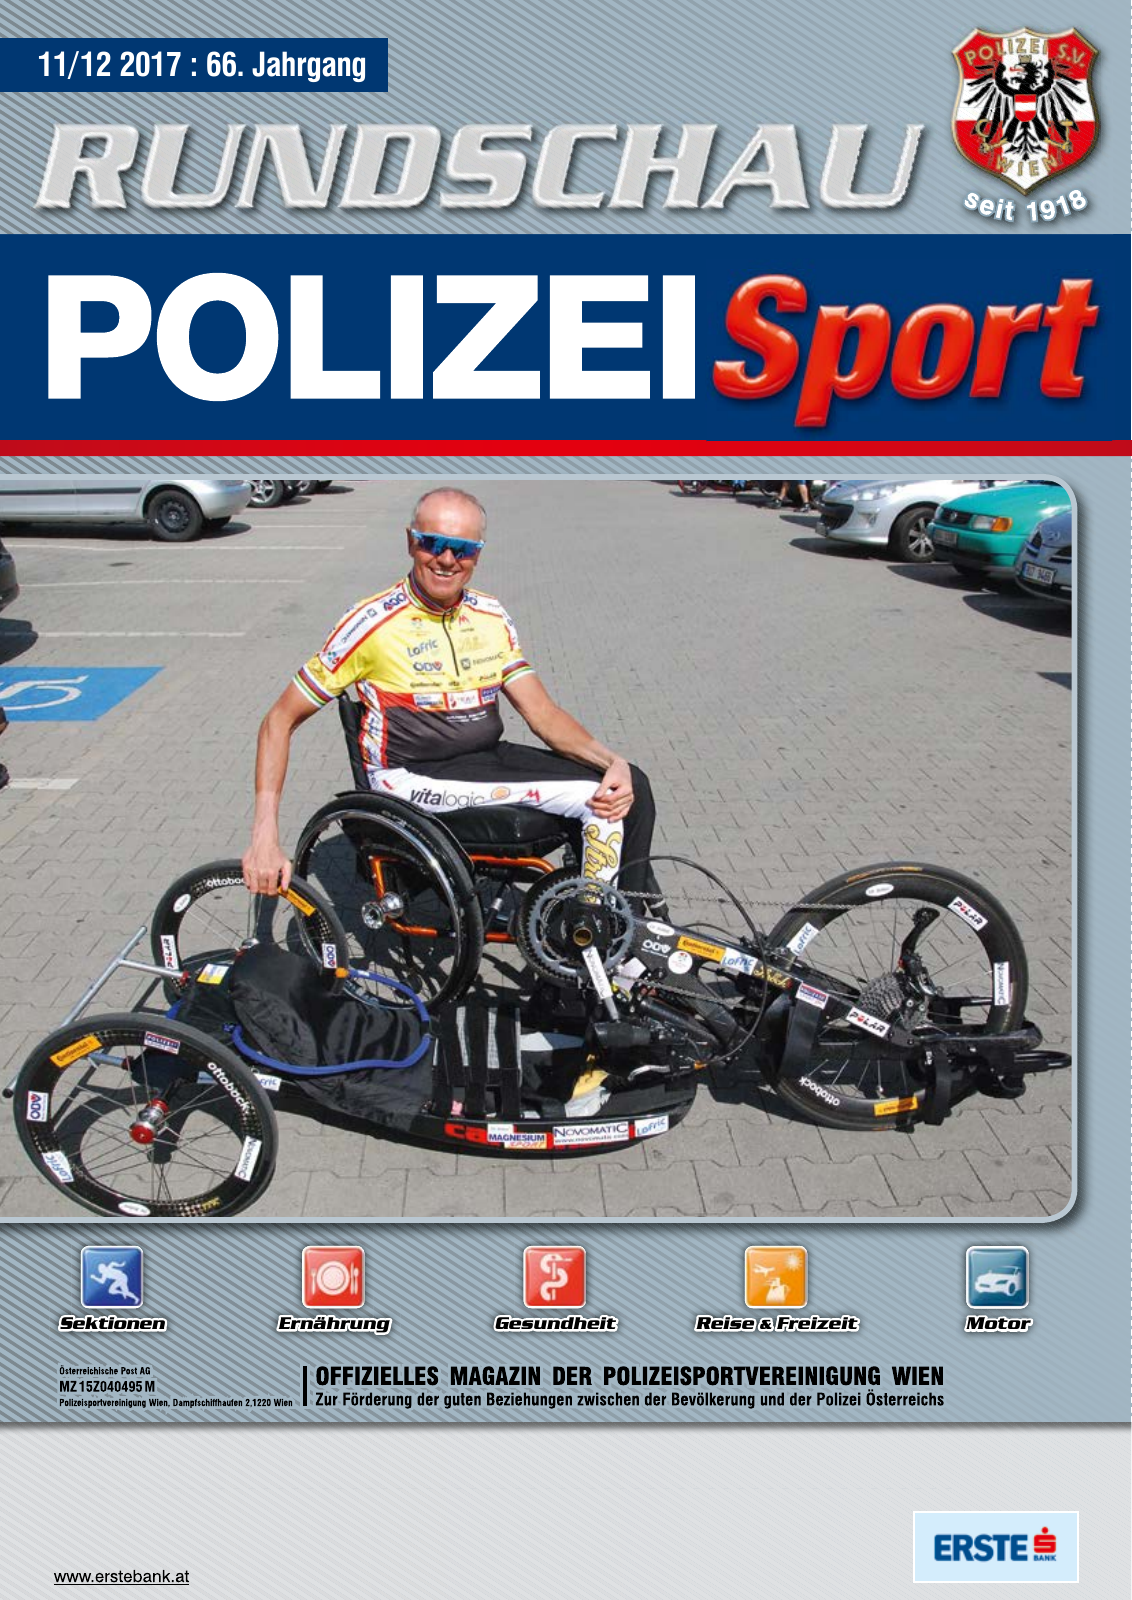 Vorschau Rundschau Polizei Sport 11-12/2017 Seite 1